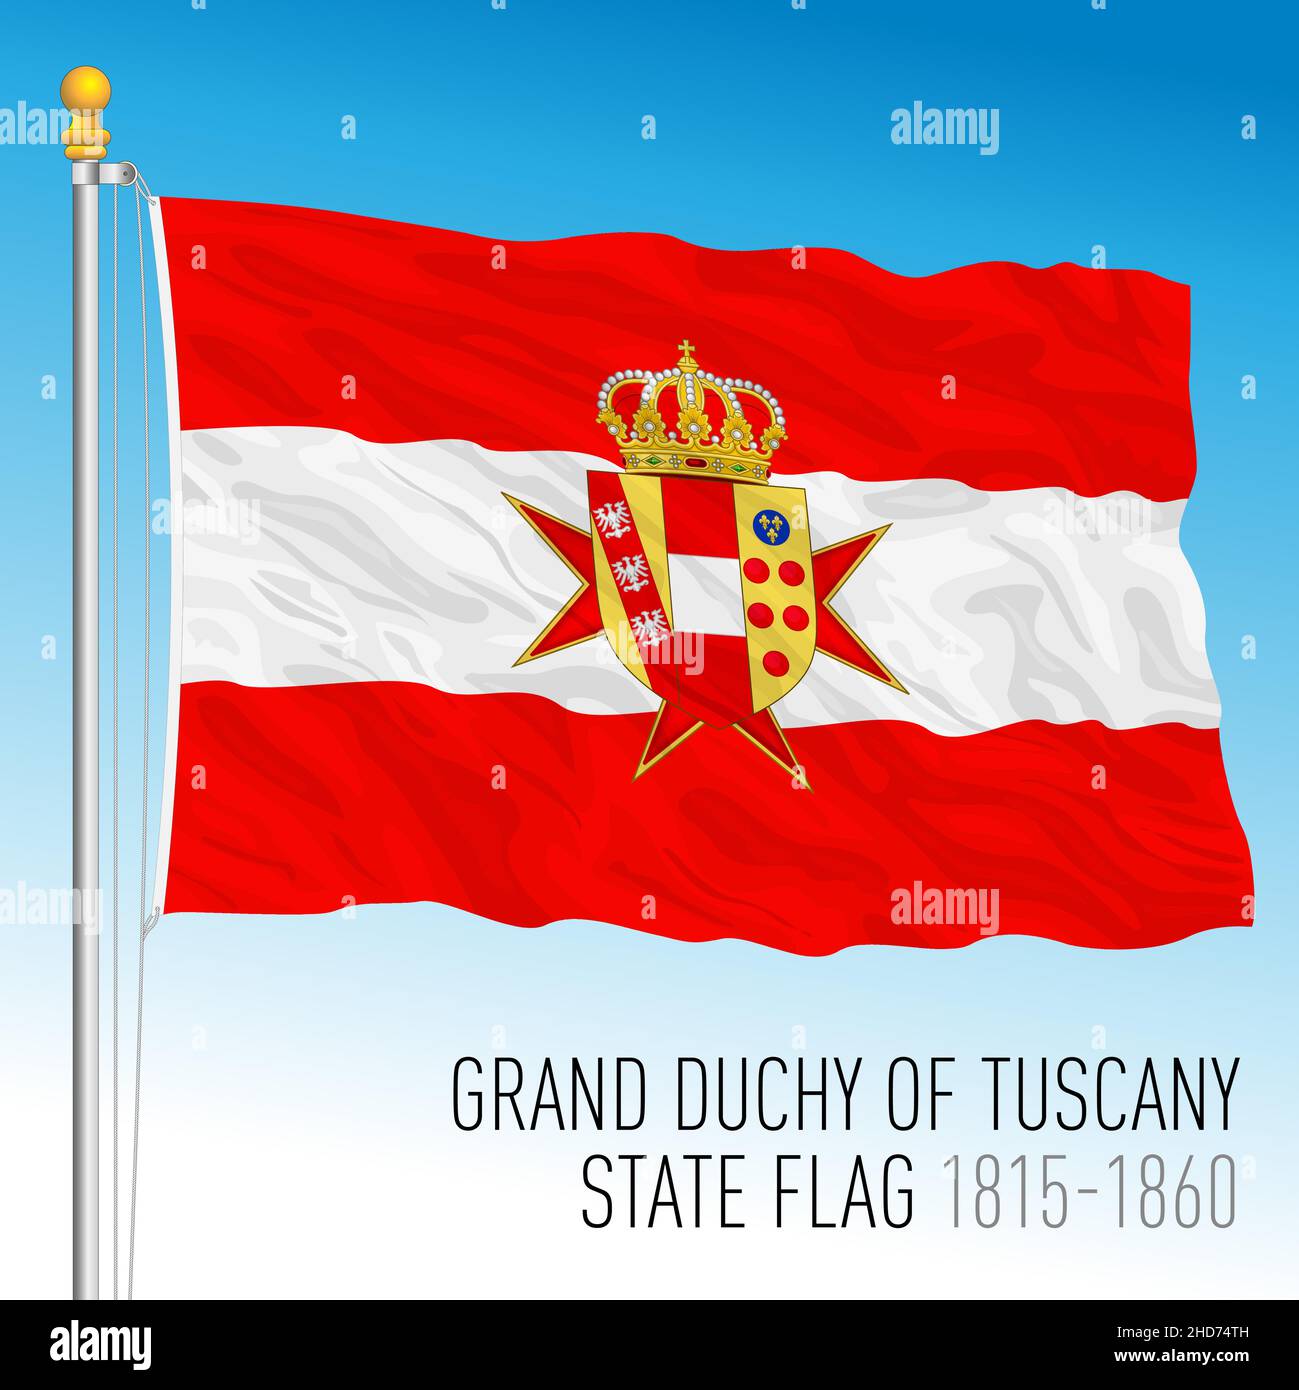 Großherzogtum Toskana historische Staatsflagge, Toskana, Italien, antikes präunitäres Land, 1815 - 1860, vektorgrafik Stock Vektor